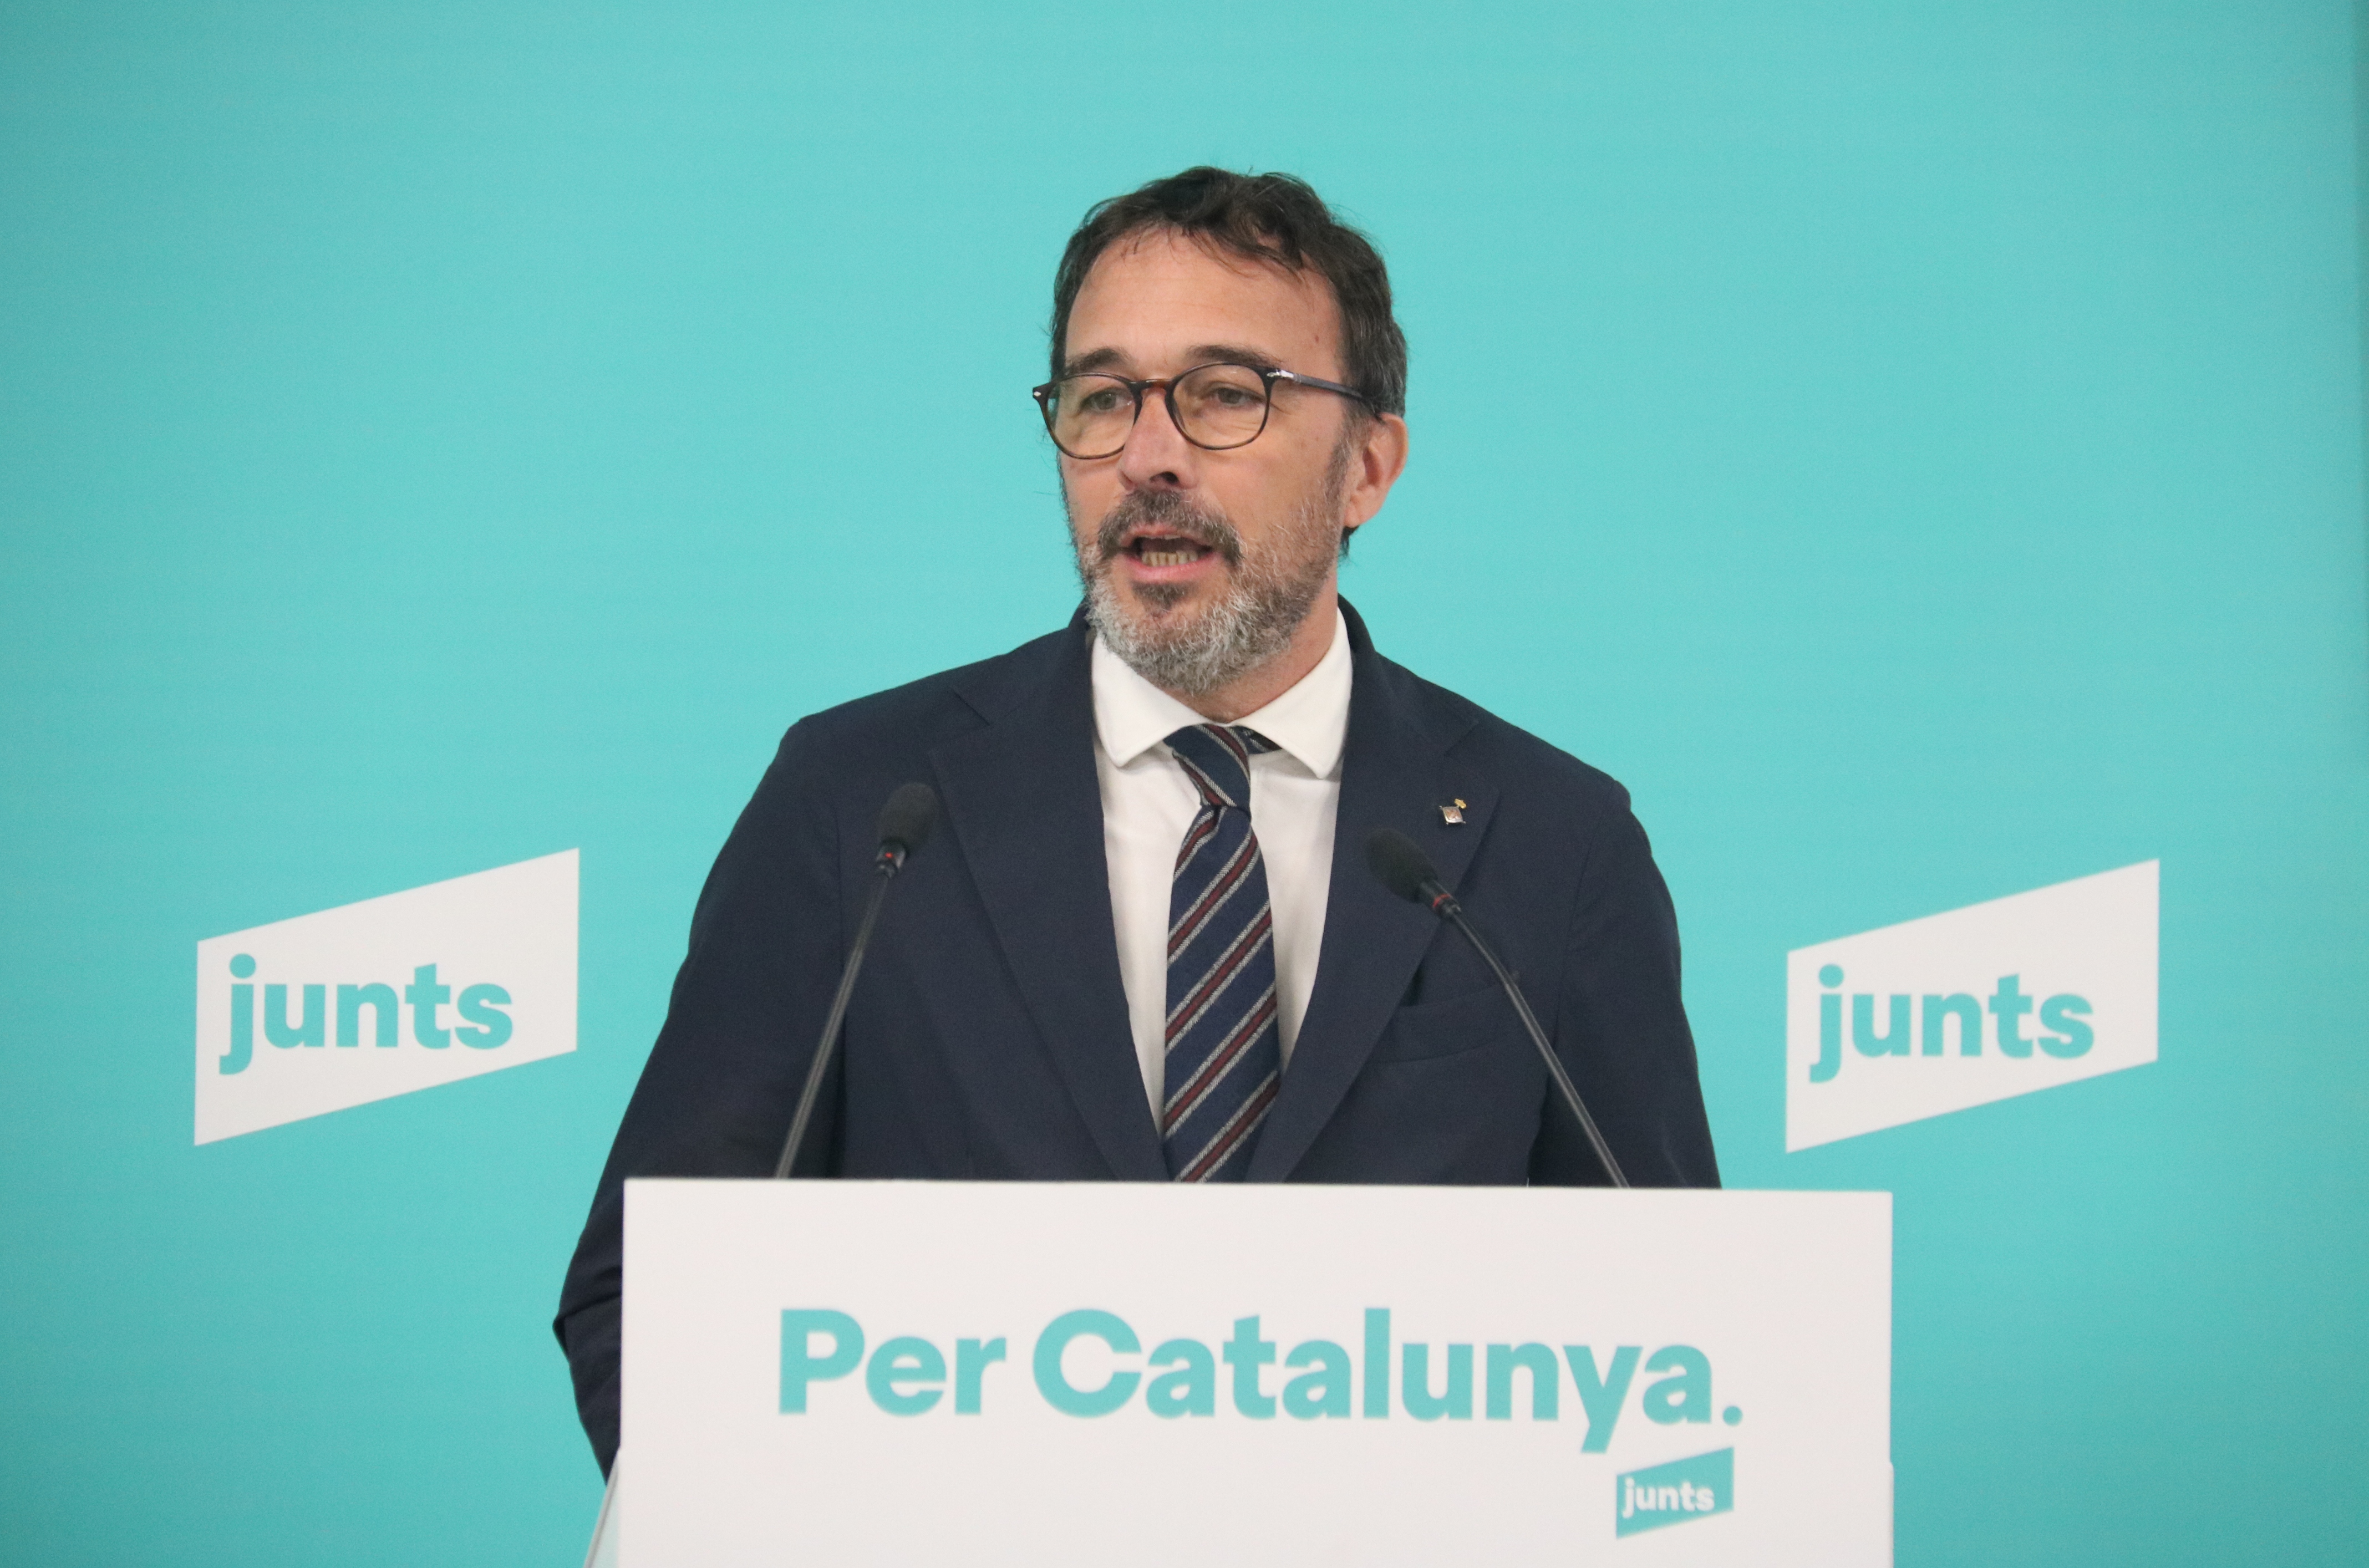 Junts reclama sancionar a las empresas catalanas que trasladaron su sede por el 'procés' y no quieran volver